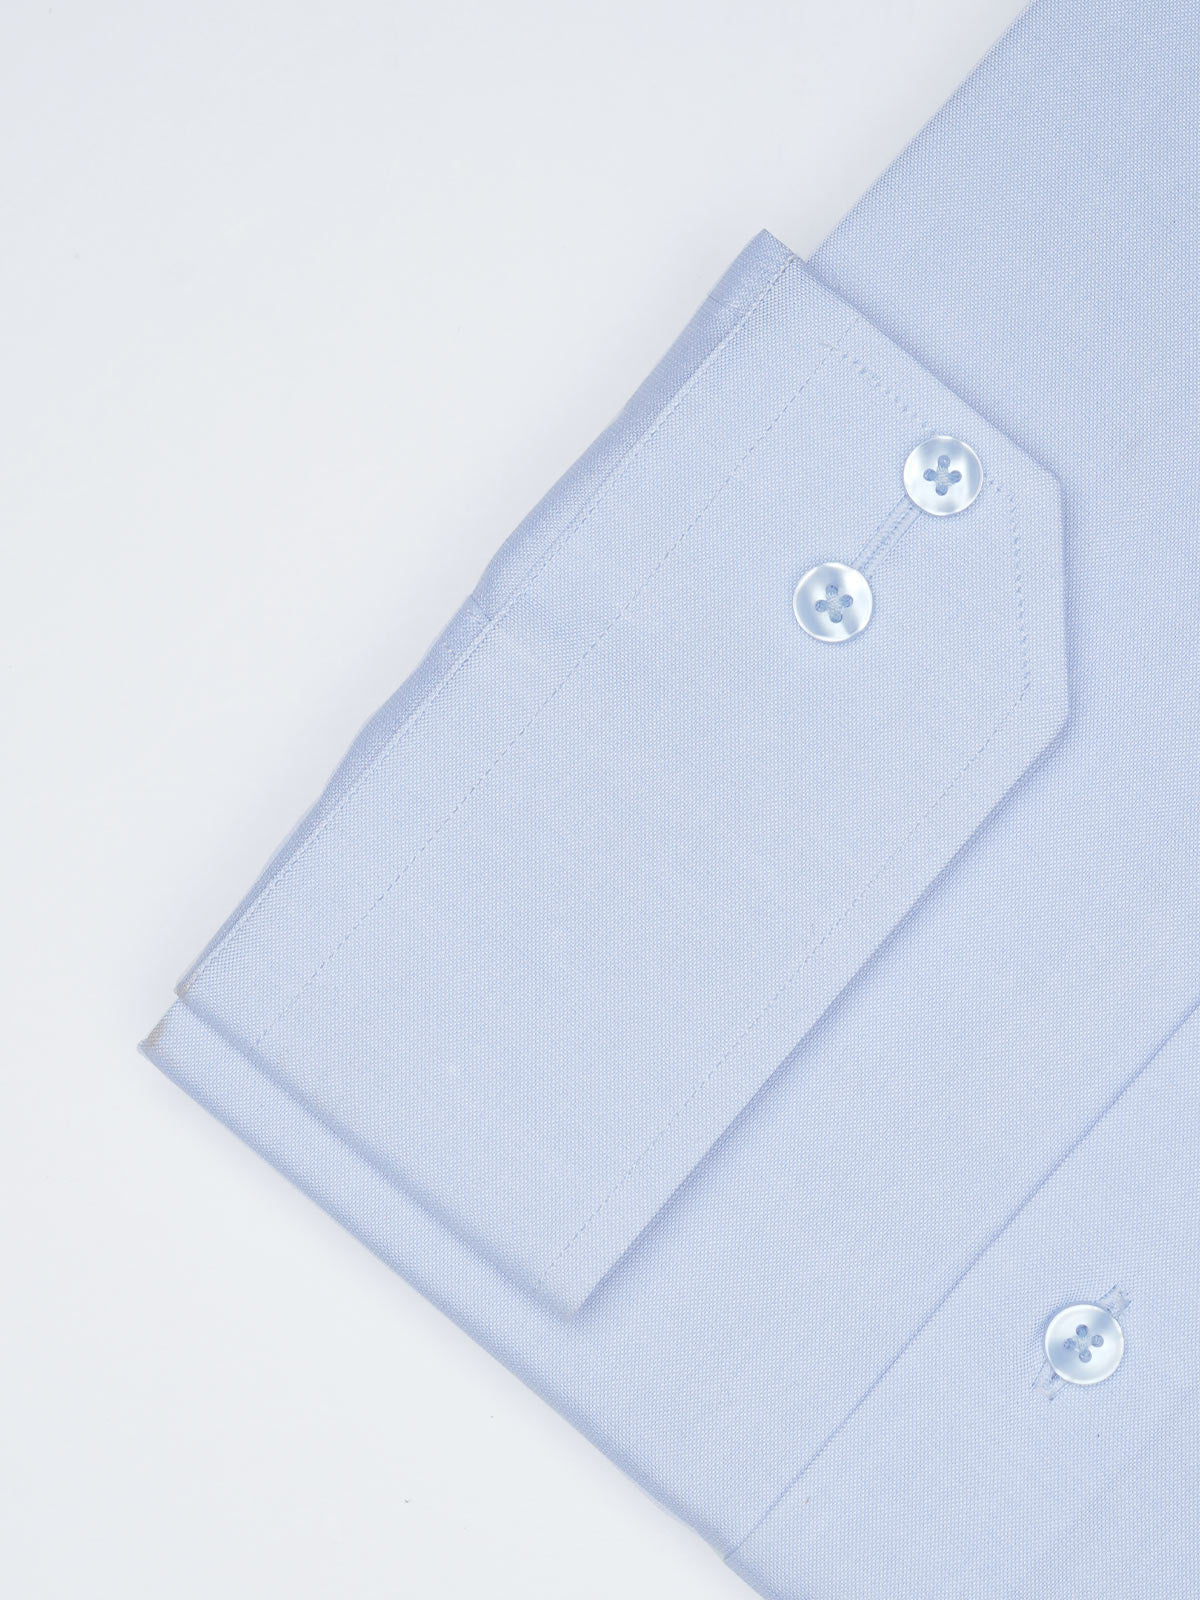 Light Blue Plain, Elite Edition, Cutaway Collar Men’s Formal Shirt (ss-02FS)